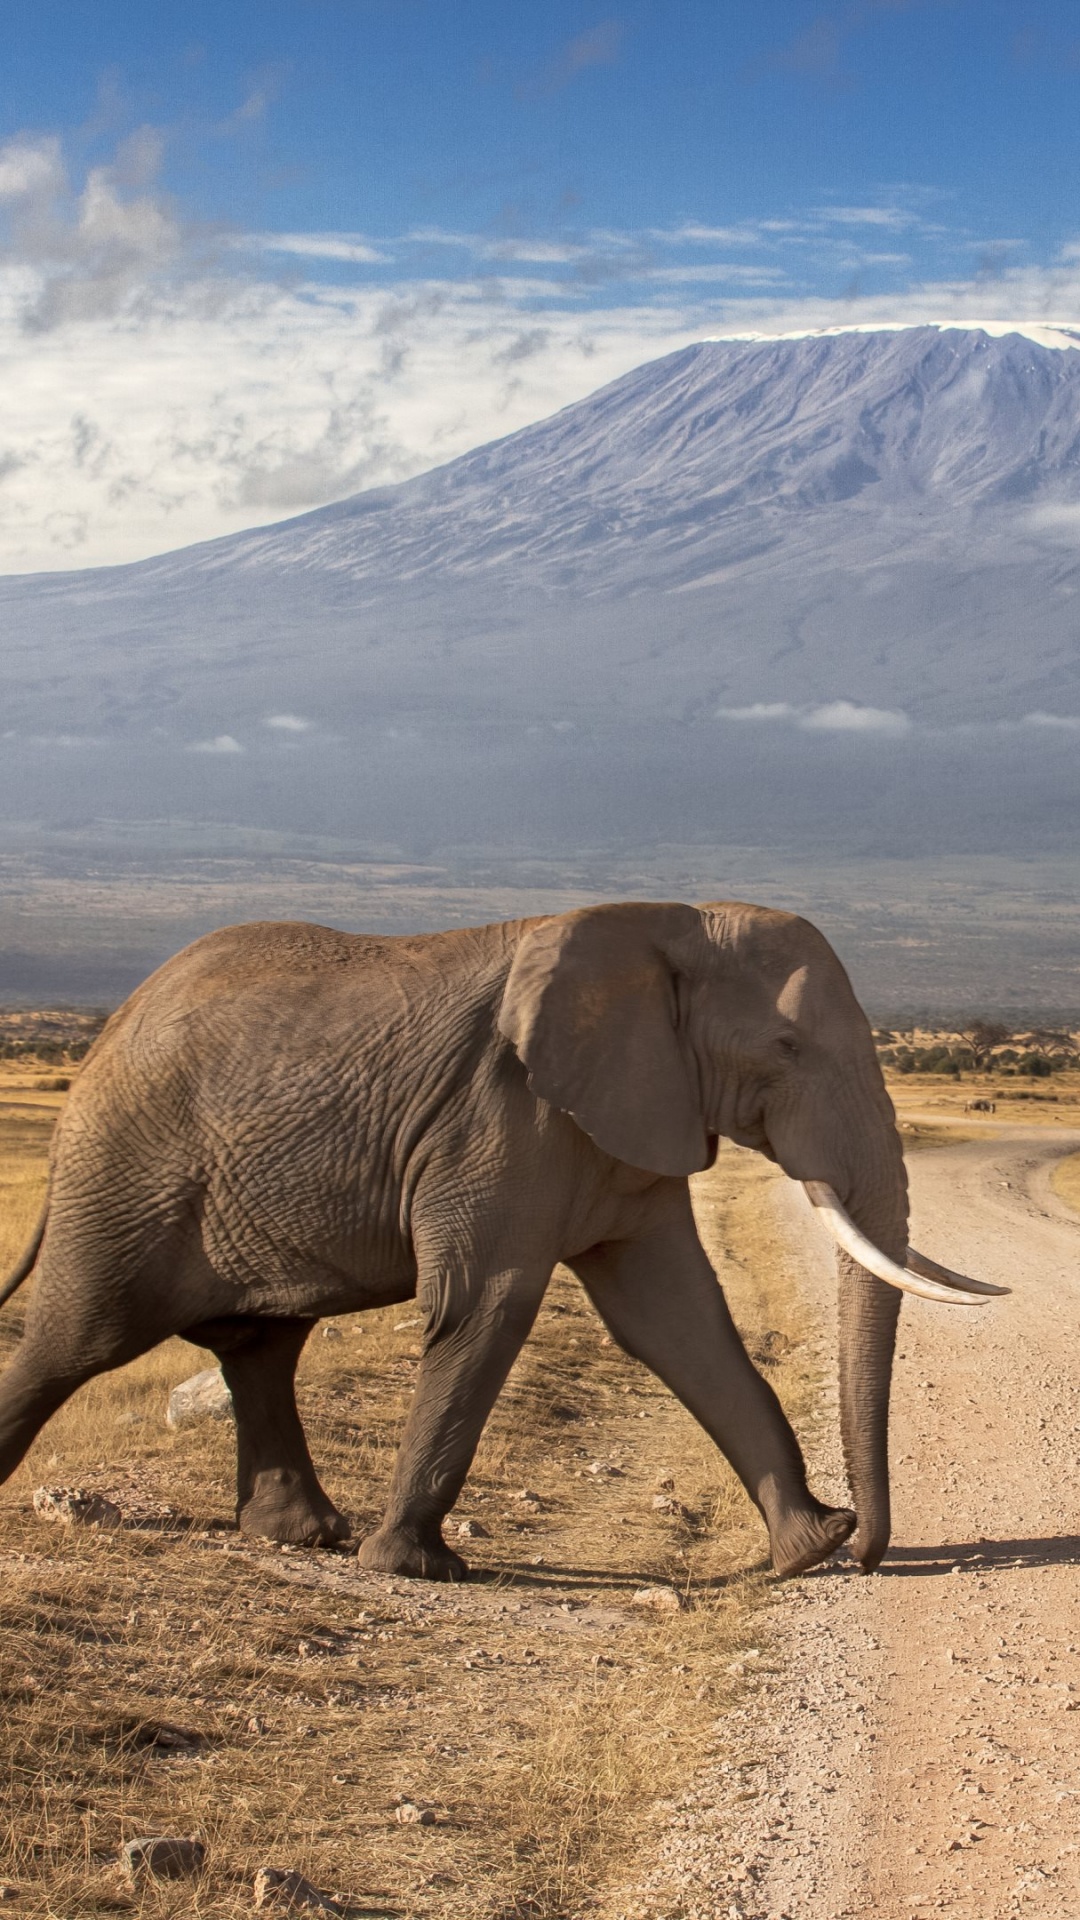 安博塞利国家公园, 马赛马拉, Safari, 大象和猛犸象, 野生动物 壁纸 1080x1920 允许